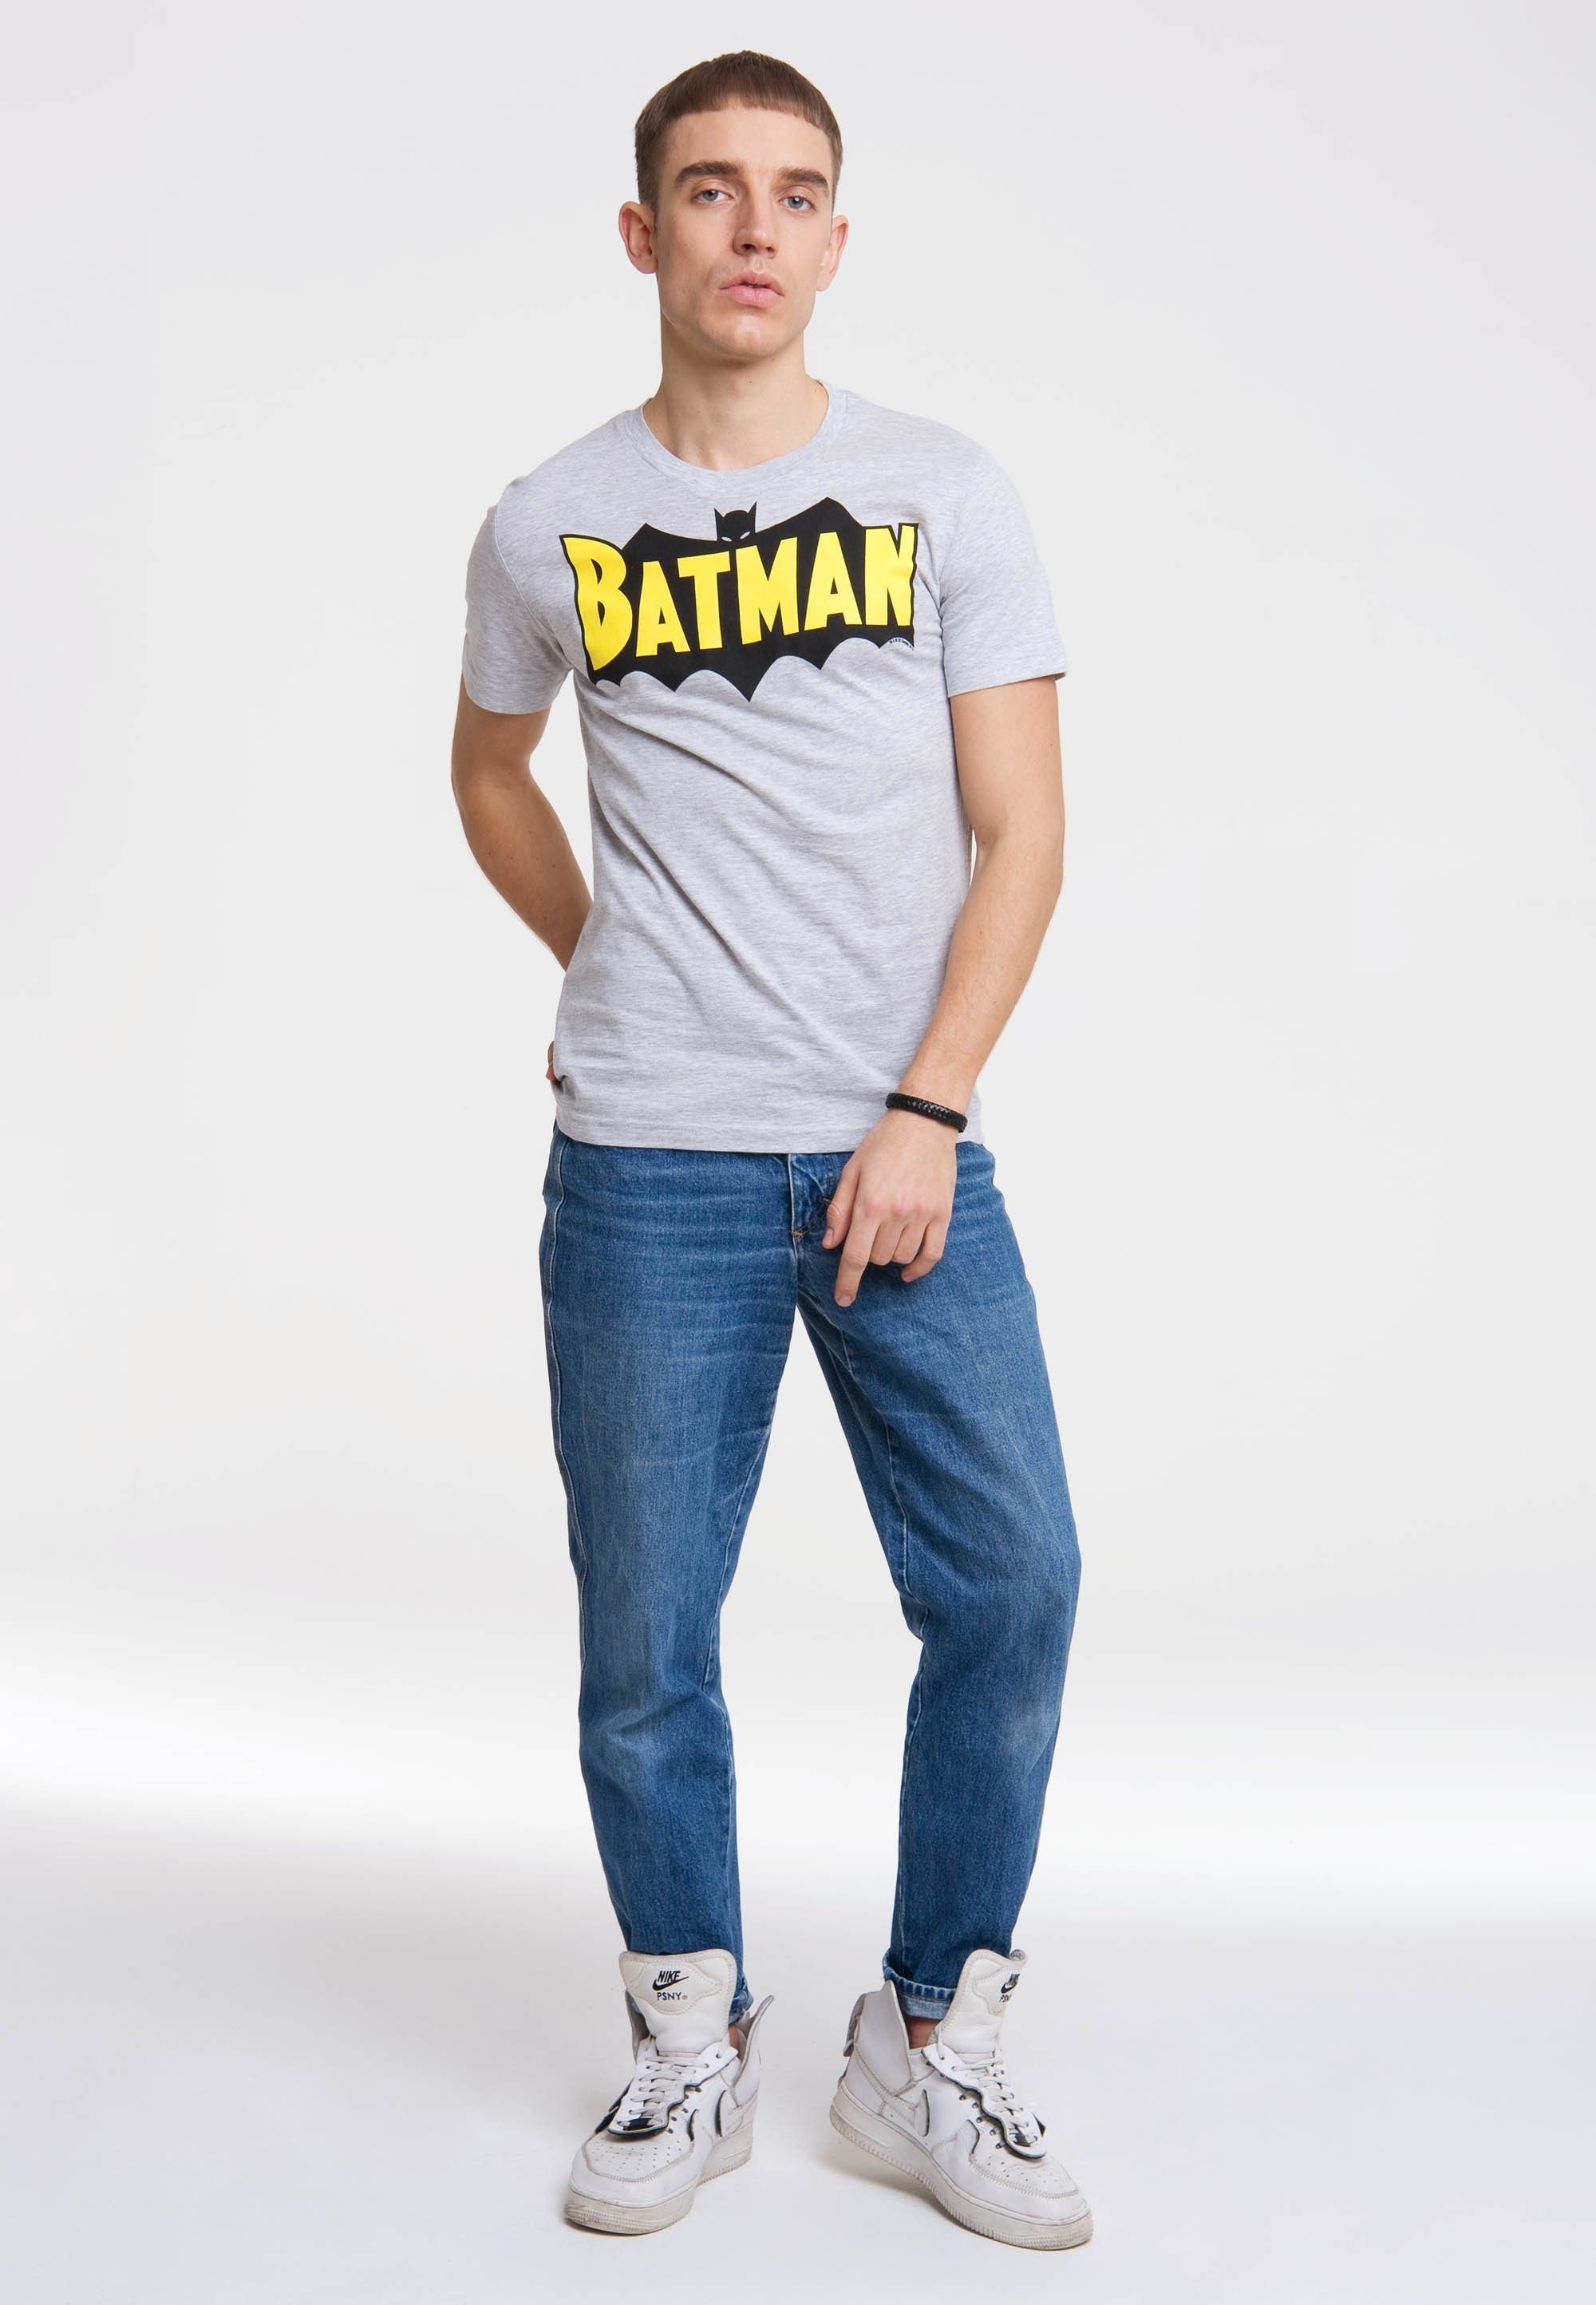 LOGOSHIRT T-Shirt BATMAN Superhelden-Print WINGS coolem - mit